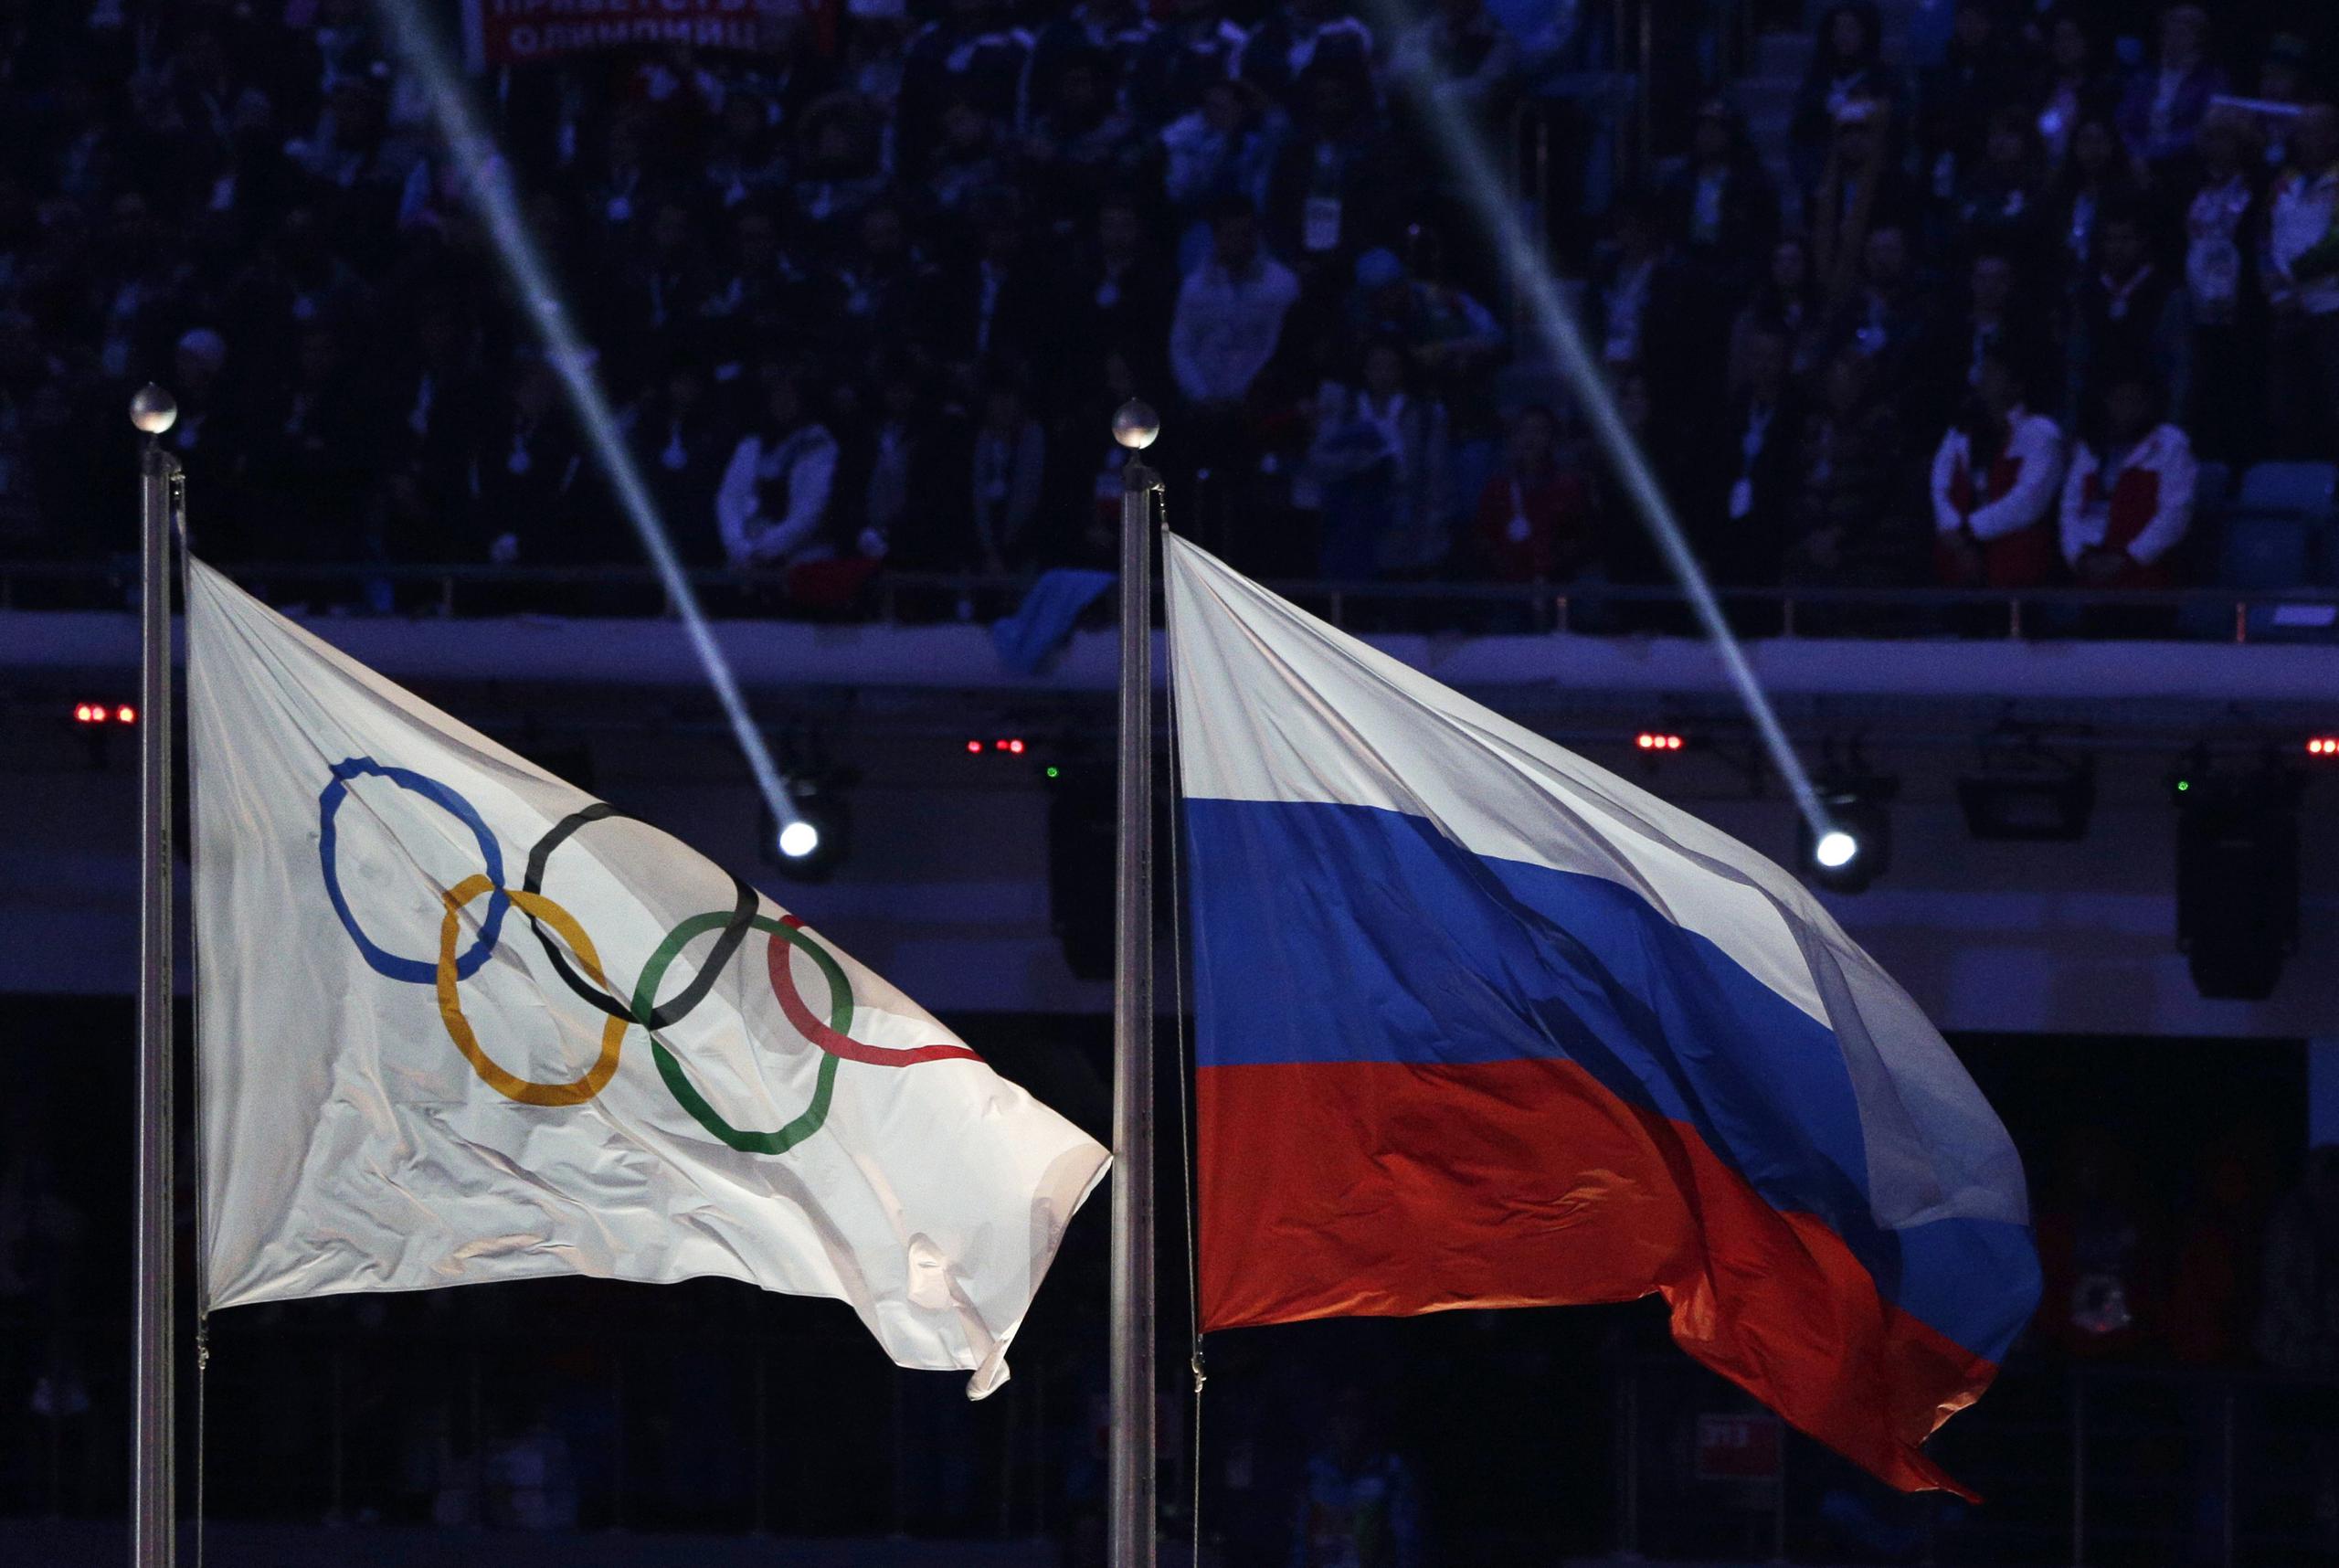 La bandera de Rusia (a la derecha) flamea junto a la de los Juegos Olímpicos durante la ceremonia de clausura de los Juegos de Invierno, en Sochi, el 23 de febrero de 2014.